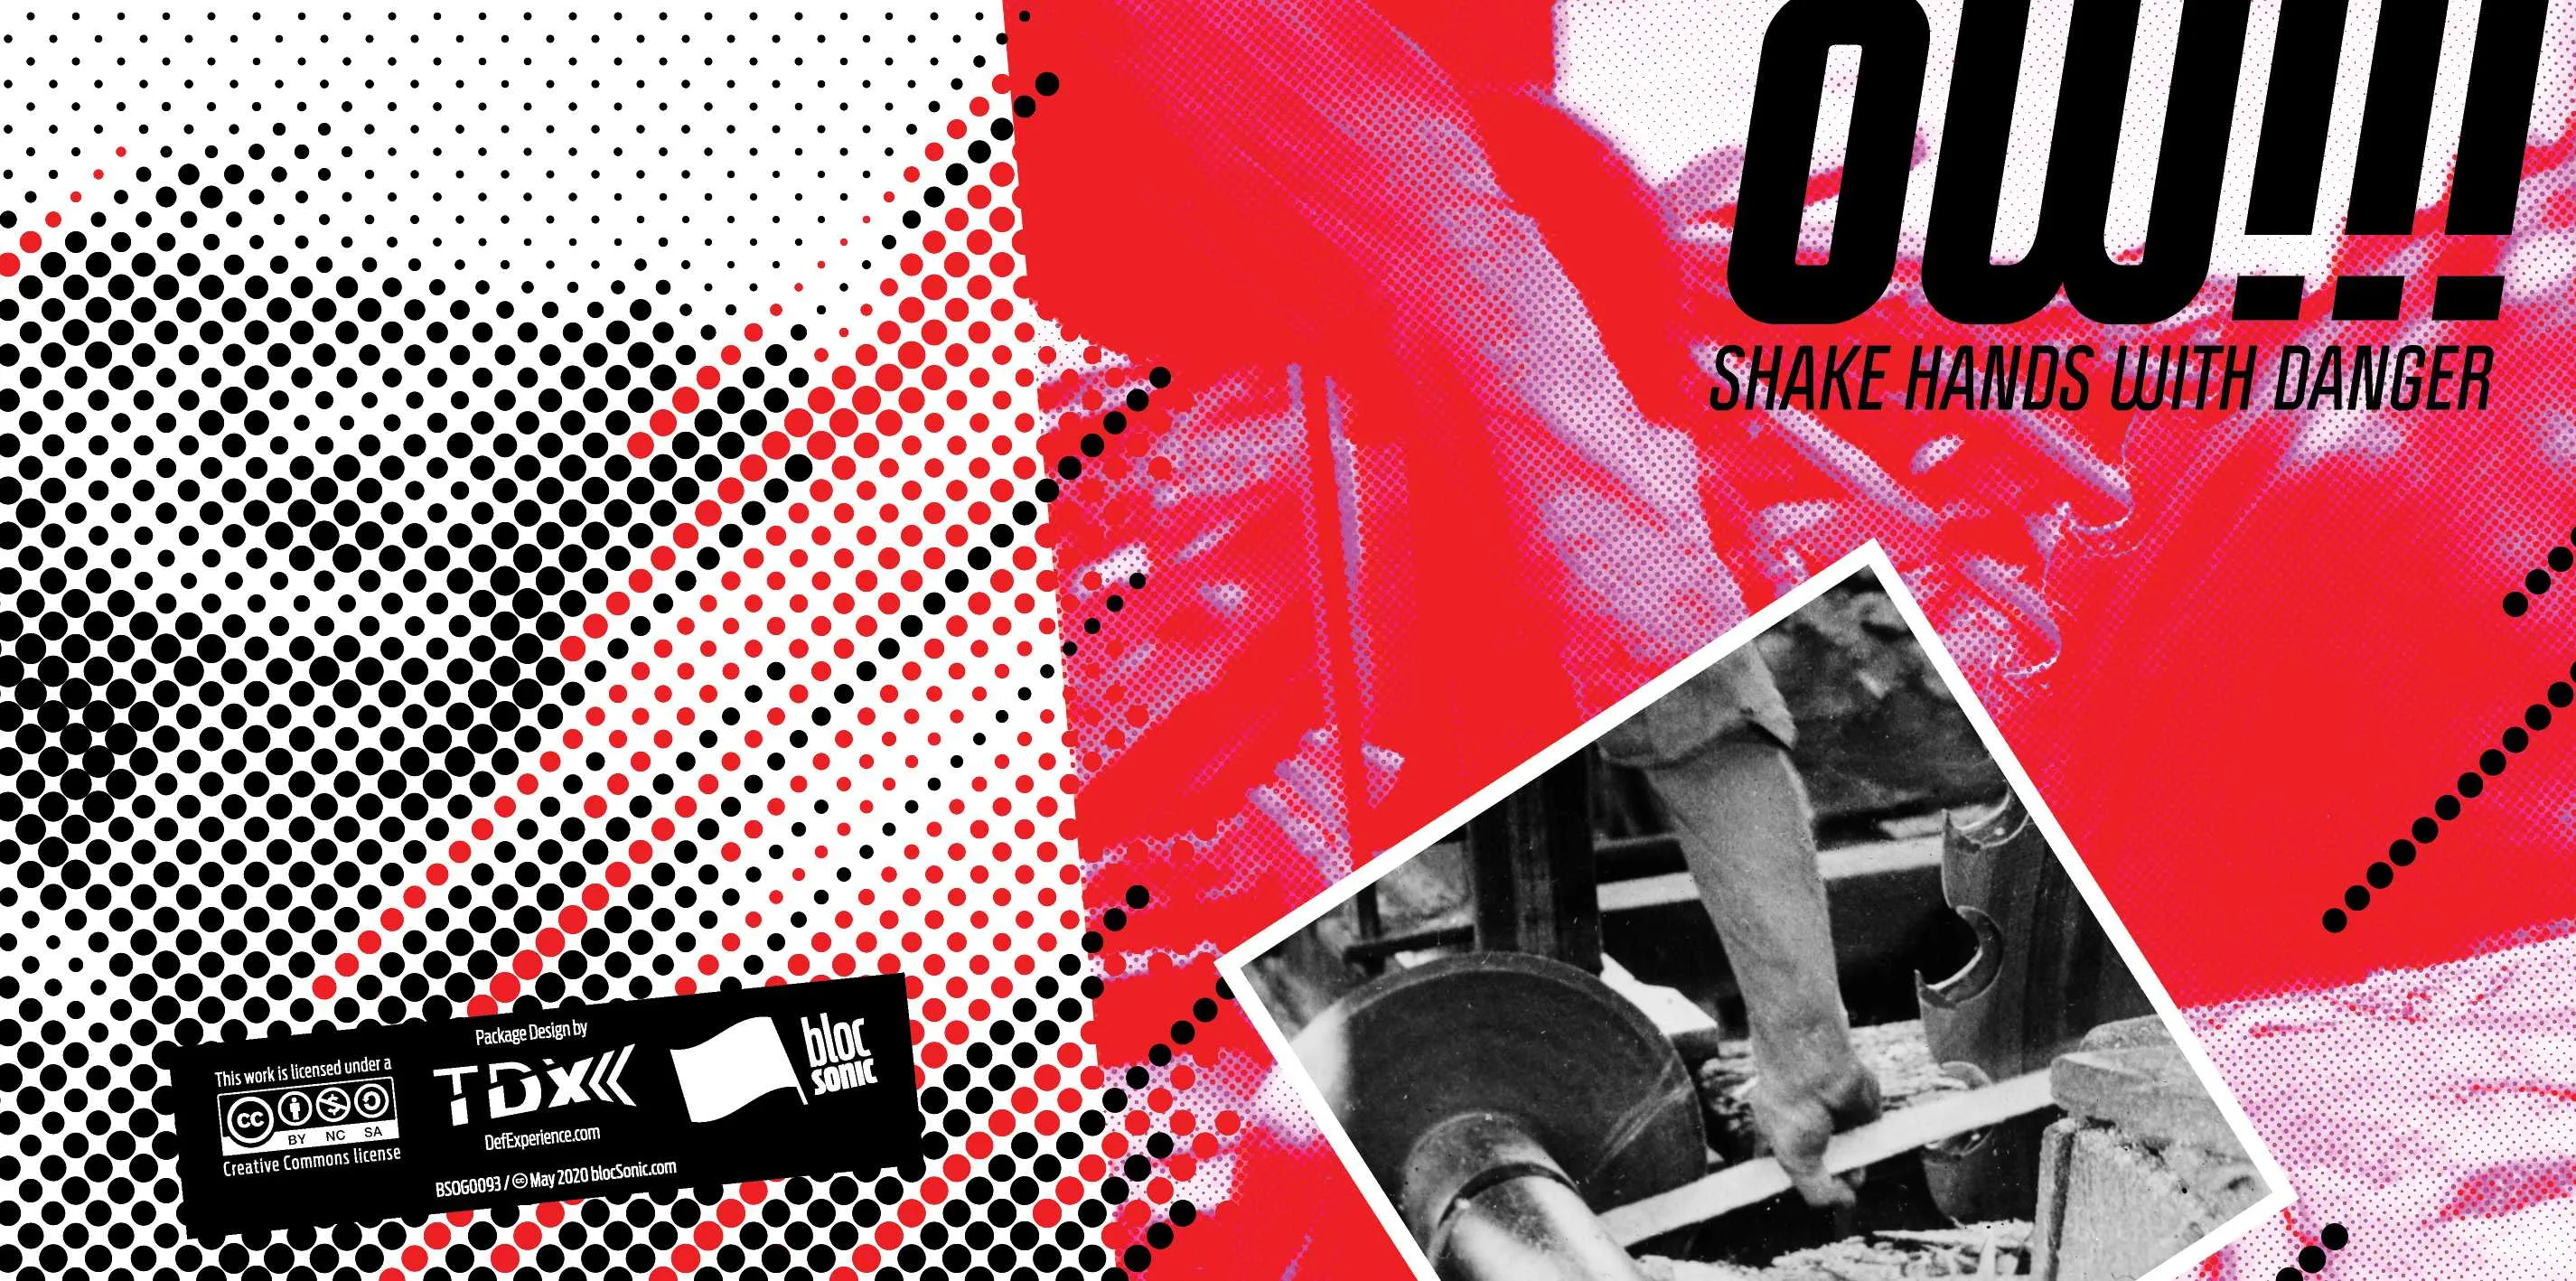 Album insert for “Shake Hands With Danger” by OWTRIPLEBANG